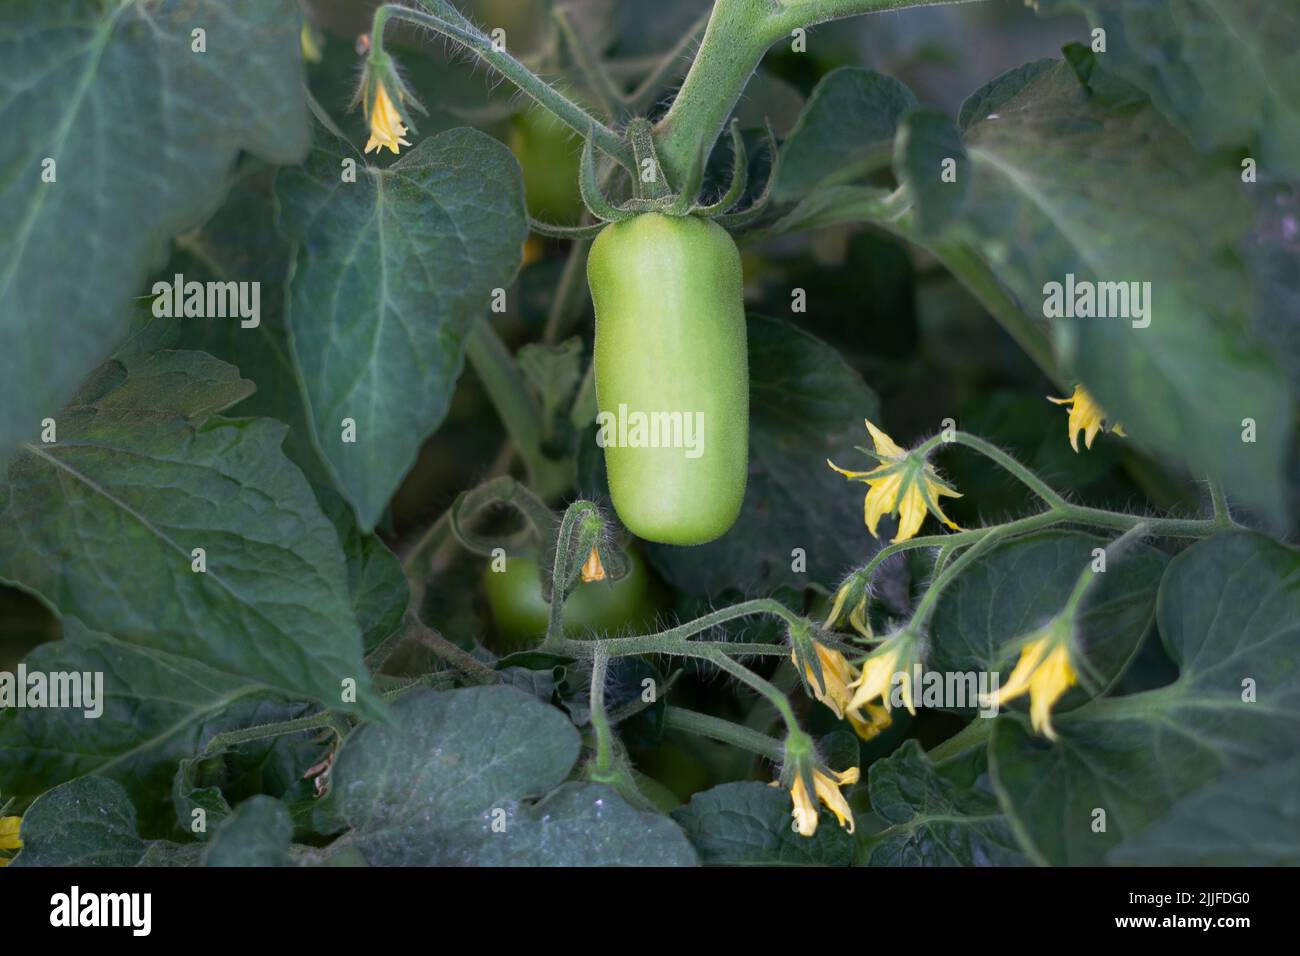 Las filas frescas Tomates ovalados verdes en una rama en un invernadero. Un tomate criado en casa de tallo largo inmaduro crece en una vid en un invernadero. Foto de stock